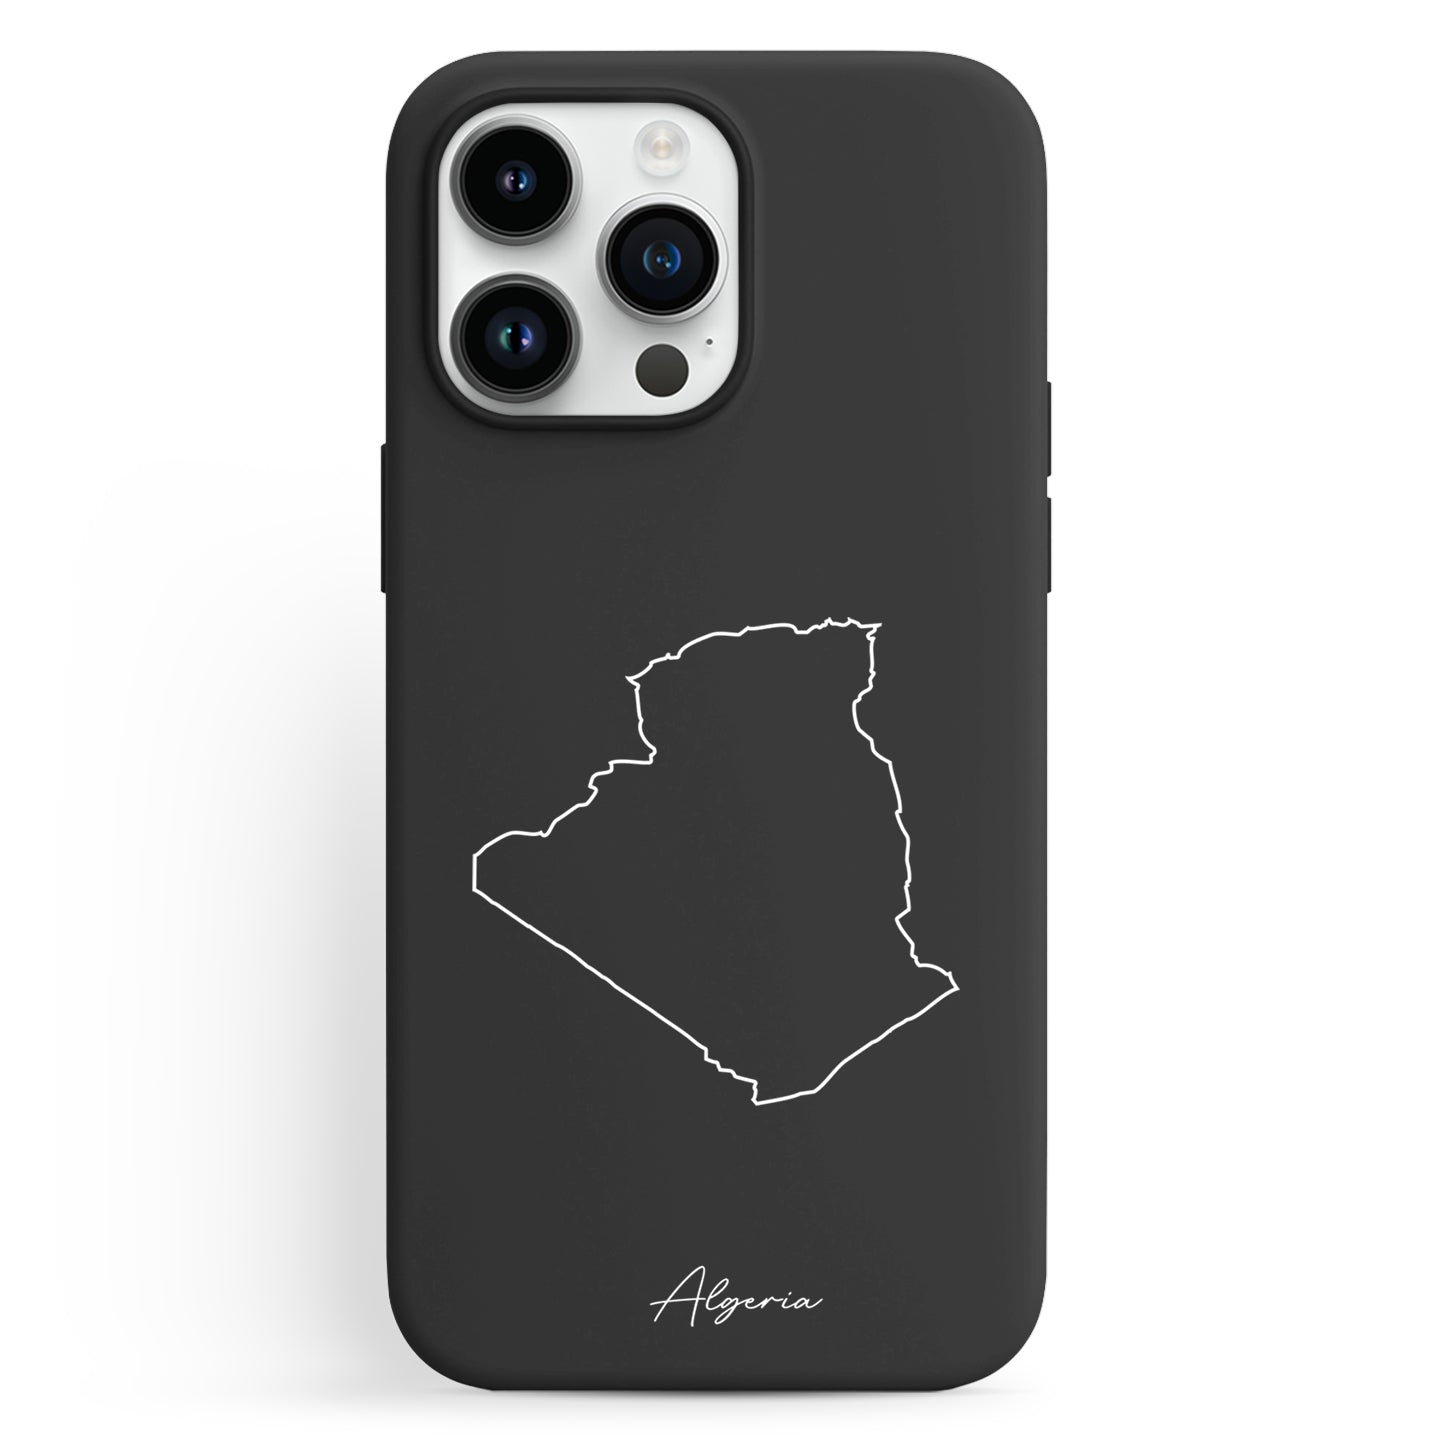 Handyhüllen mit Landkarte - Algerien - 1instaphone